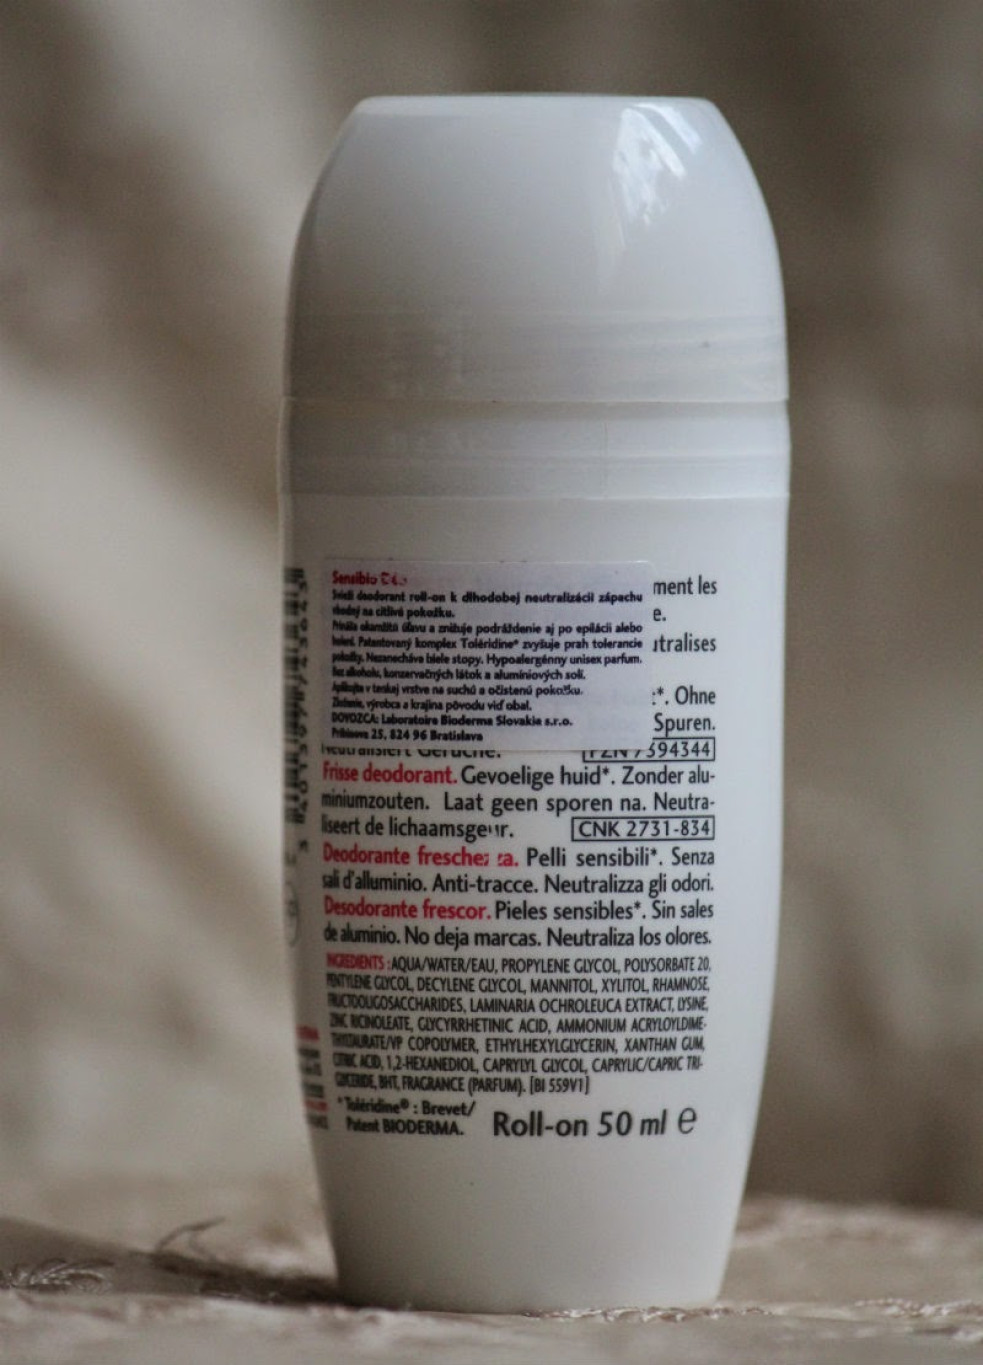 Bioderma deodorant a anti-perspirant